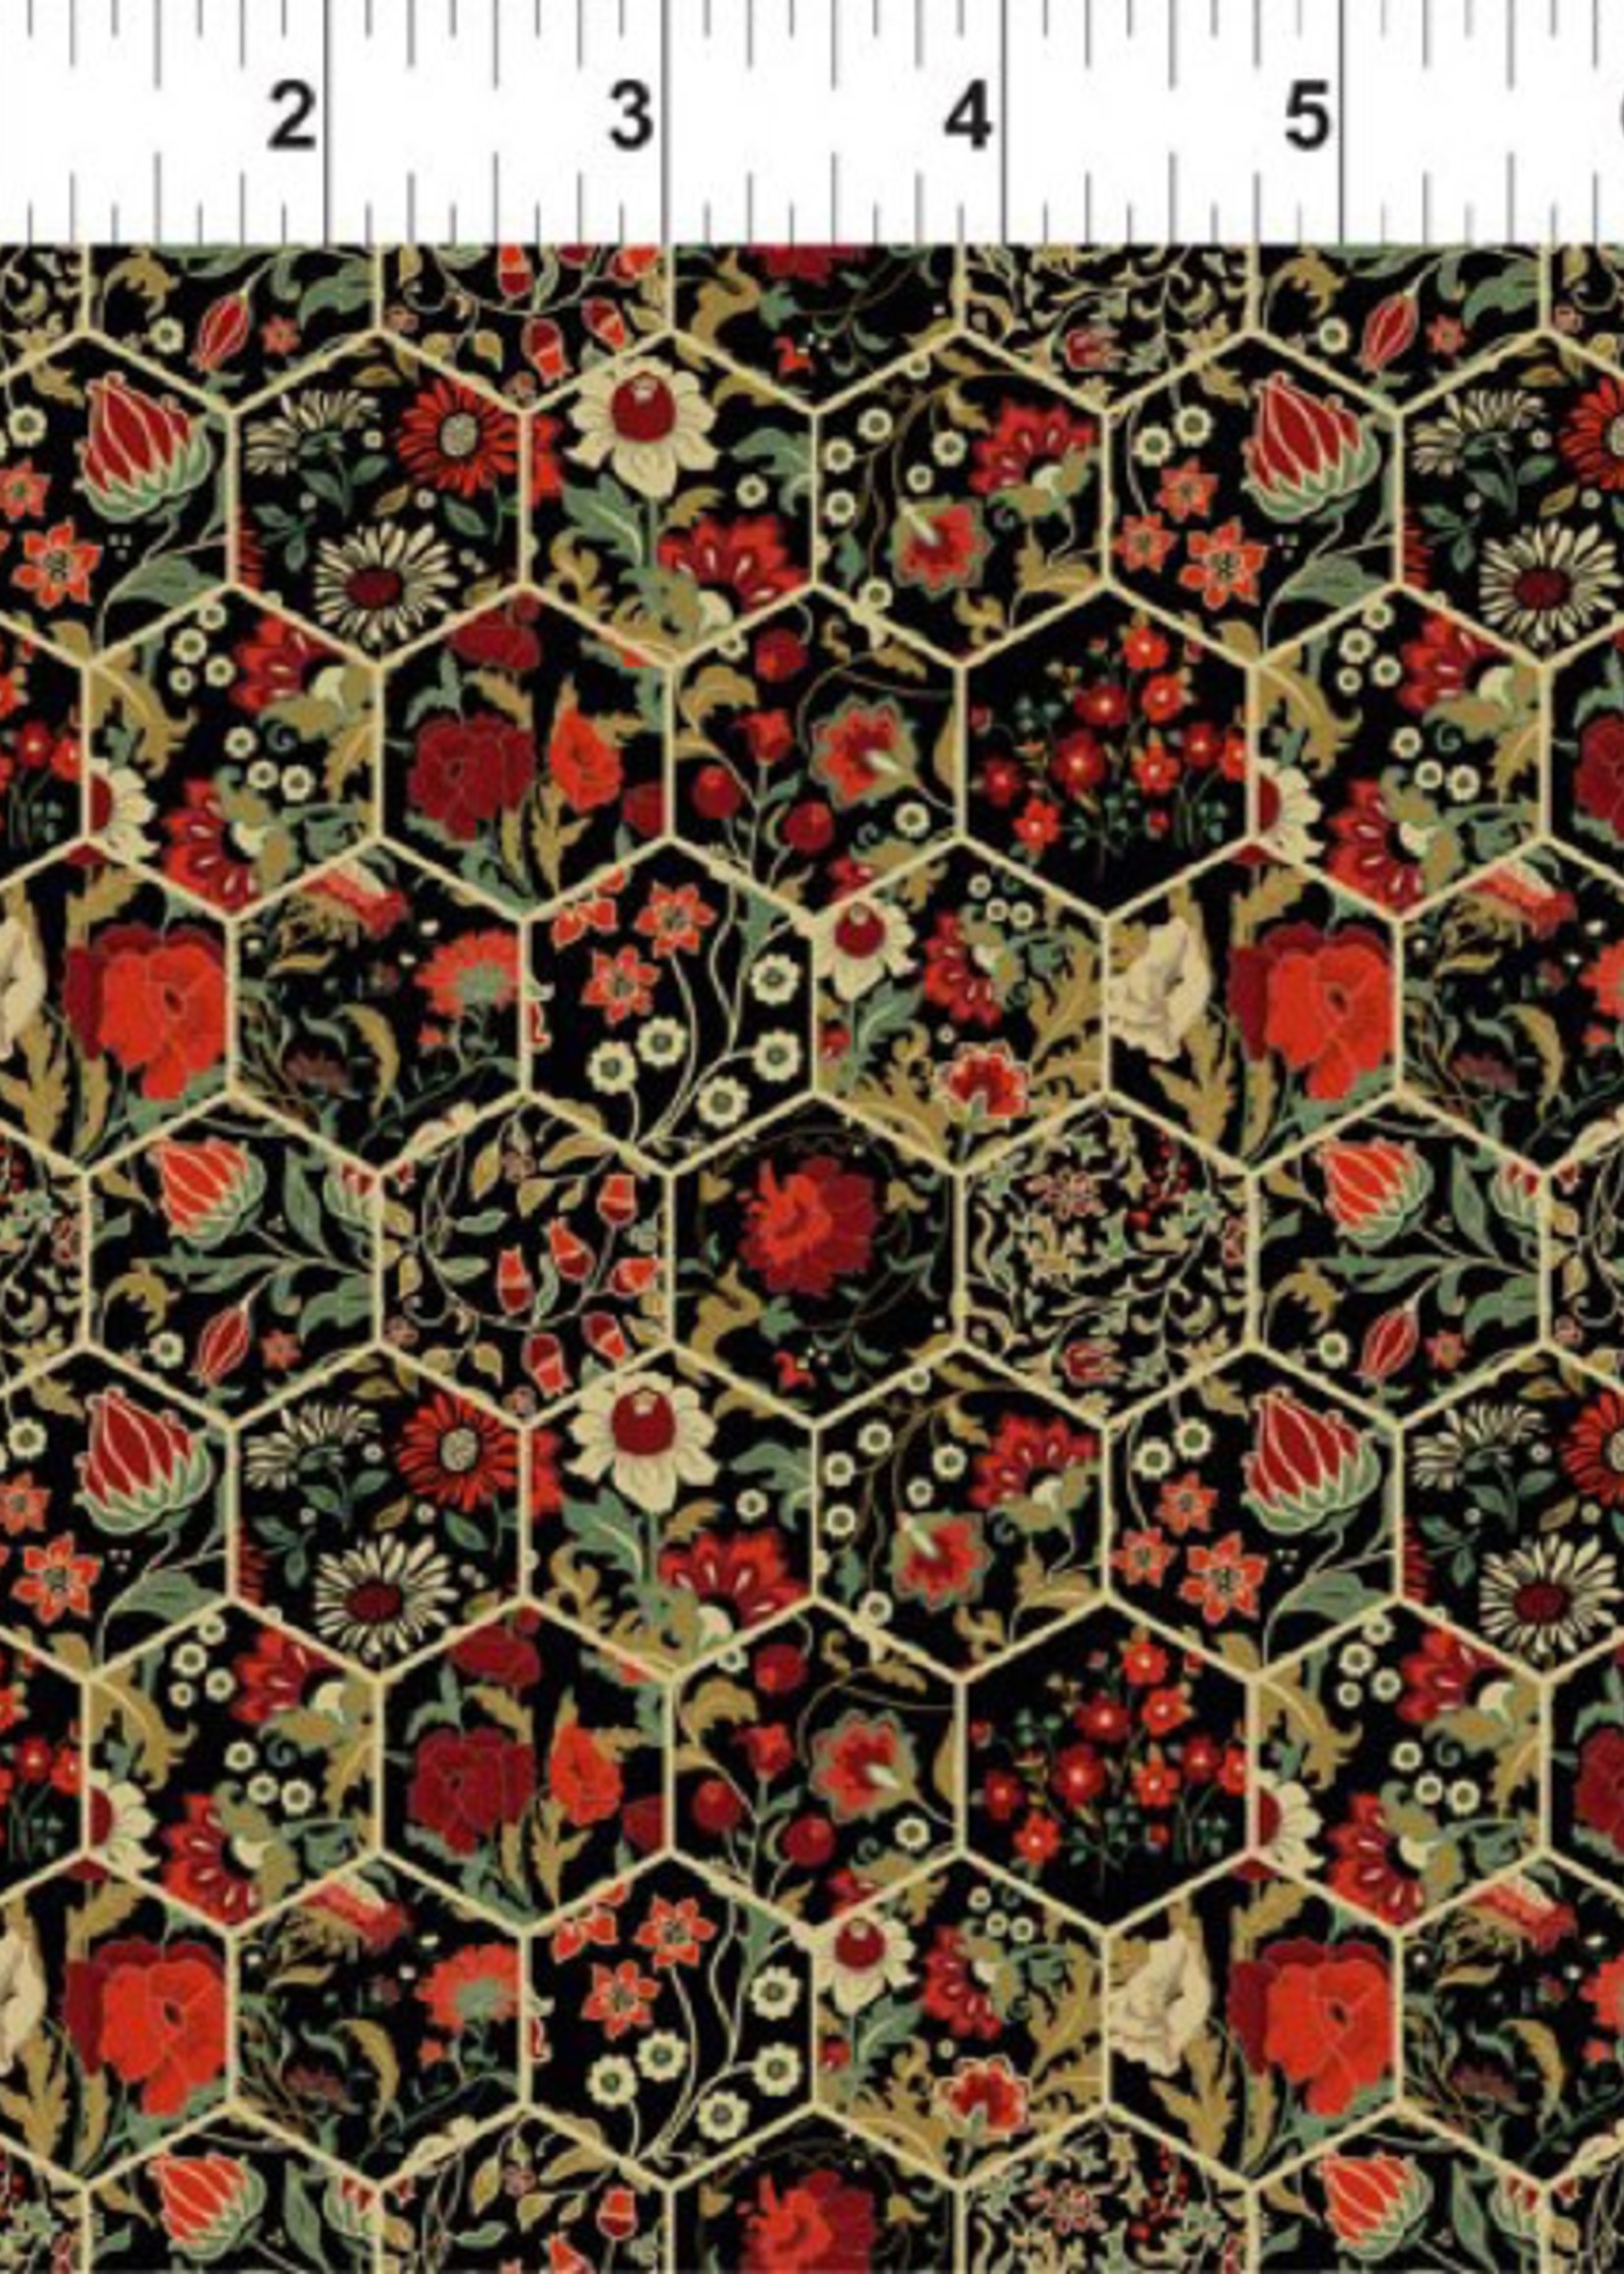 In The Beginning Garden Delights - Hexagons - Red